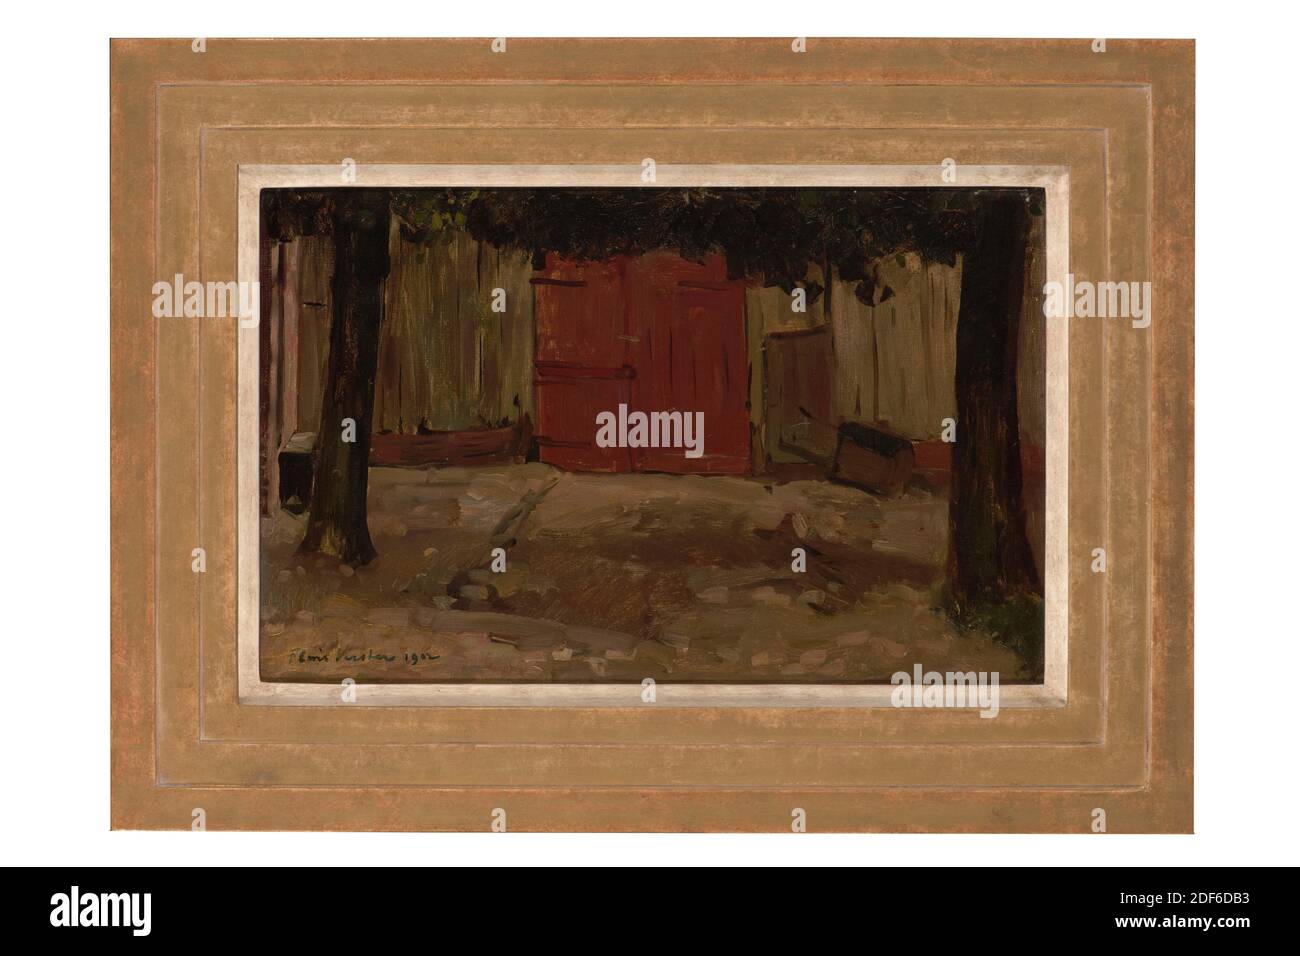 Peinture, Floris Verster, 1902, Signature avant, en bas à gauche: Floris Verster 1902, panneau, peinture à l'huile, peint, porteur: 29.5 × 45.7 × 0.3cm (295 × 457 × 3mm), avec cadre: 45 61.2 × 3.4cm (450 × 612 × 34mm), vue village, bâtiment, étude, arbre, borger, Etude d'une grange à Borger. La porte en bois marron de la grange est visible au milieu de la représentation. Il y a une brouette à droite de la porte. Au premier plan à gauche et à droite se trouvent les arbres devant le hangar. Les troncs et le bord inférieur des feuilles des arbres peuvent être vus. Signé en bas à gauche Banque D'Images